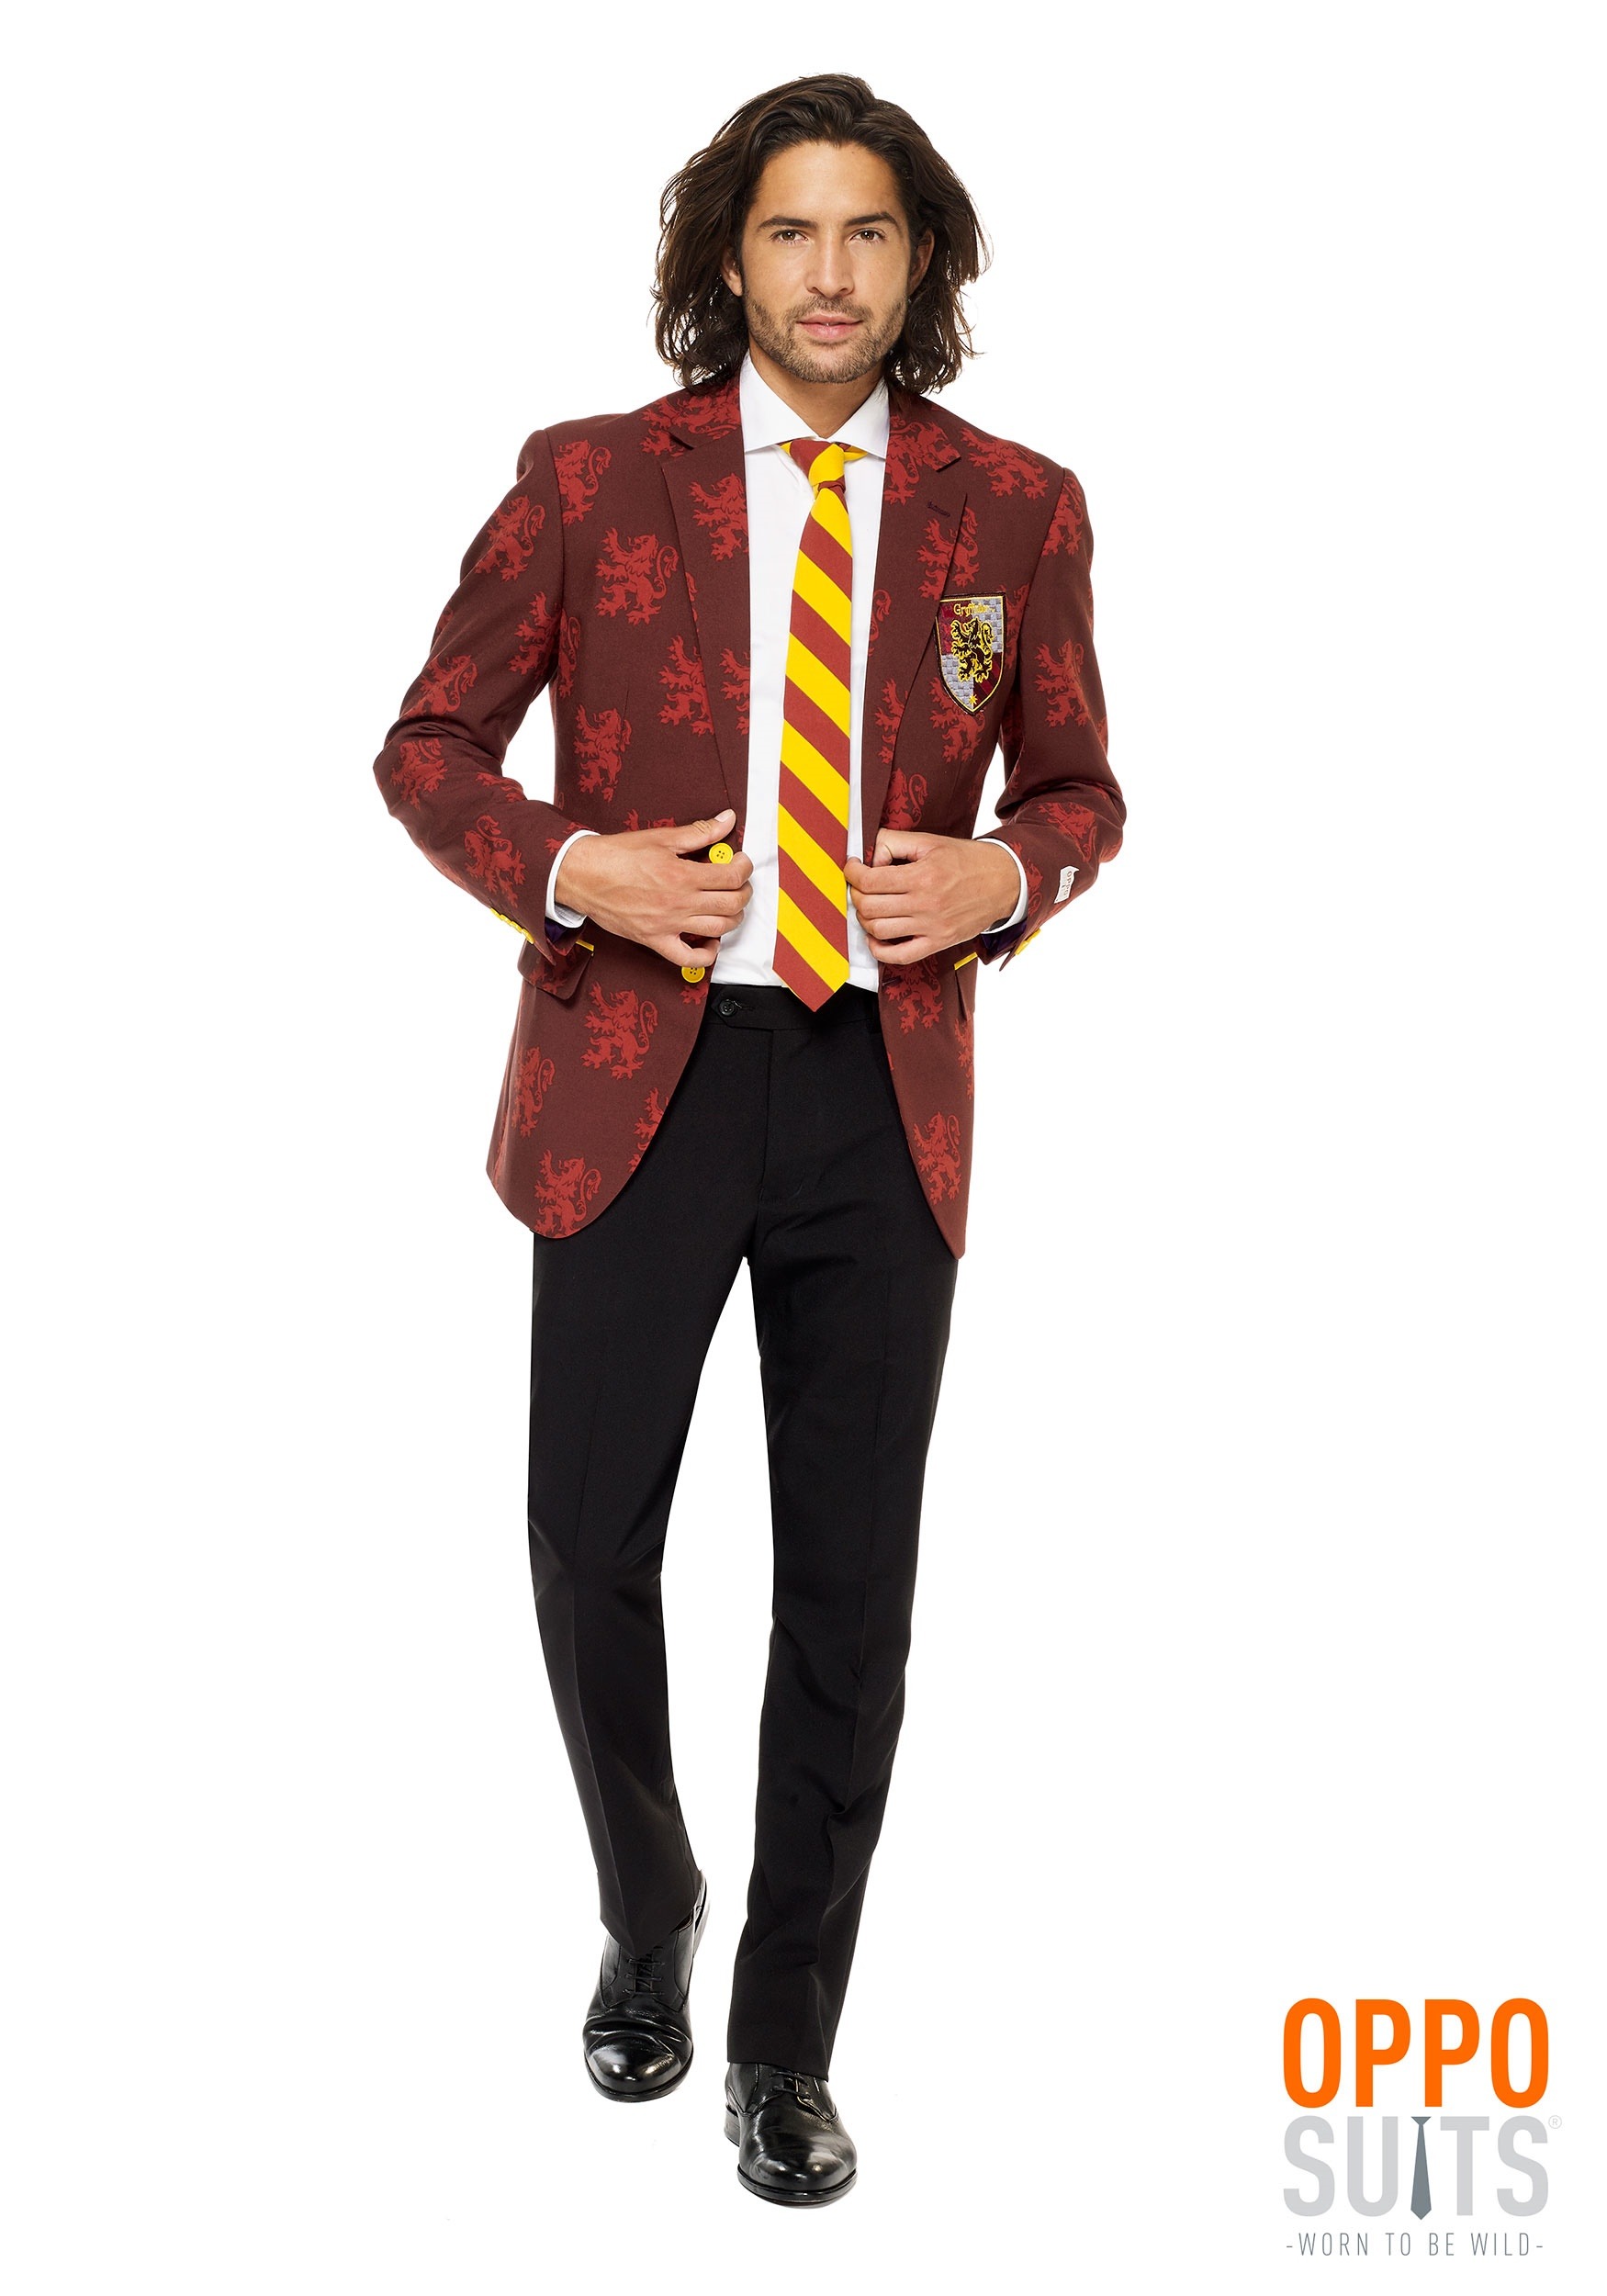 Harry Potter Gryffindor Tie Harry Potter Gift for Men - Harry Potter A